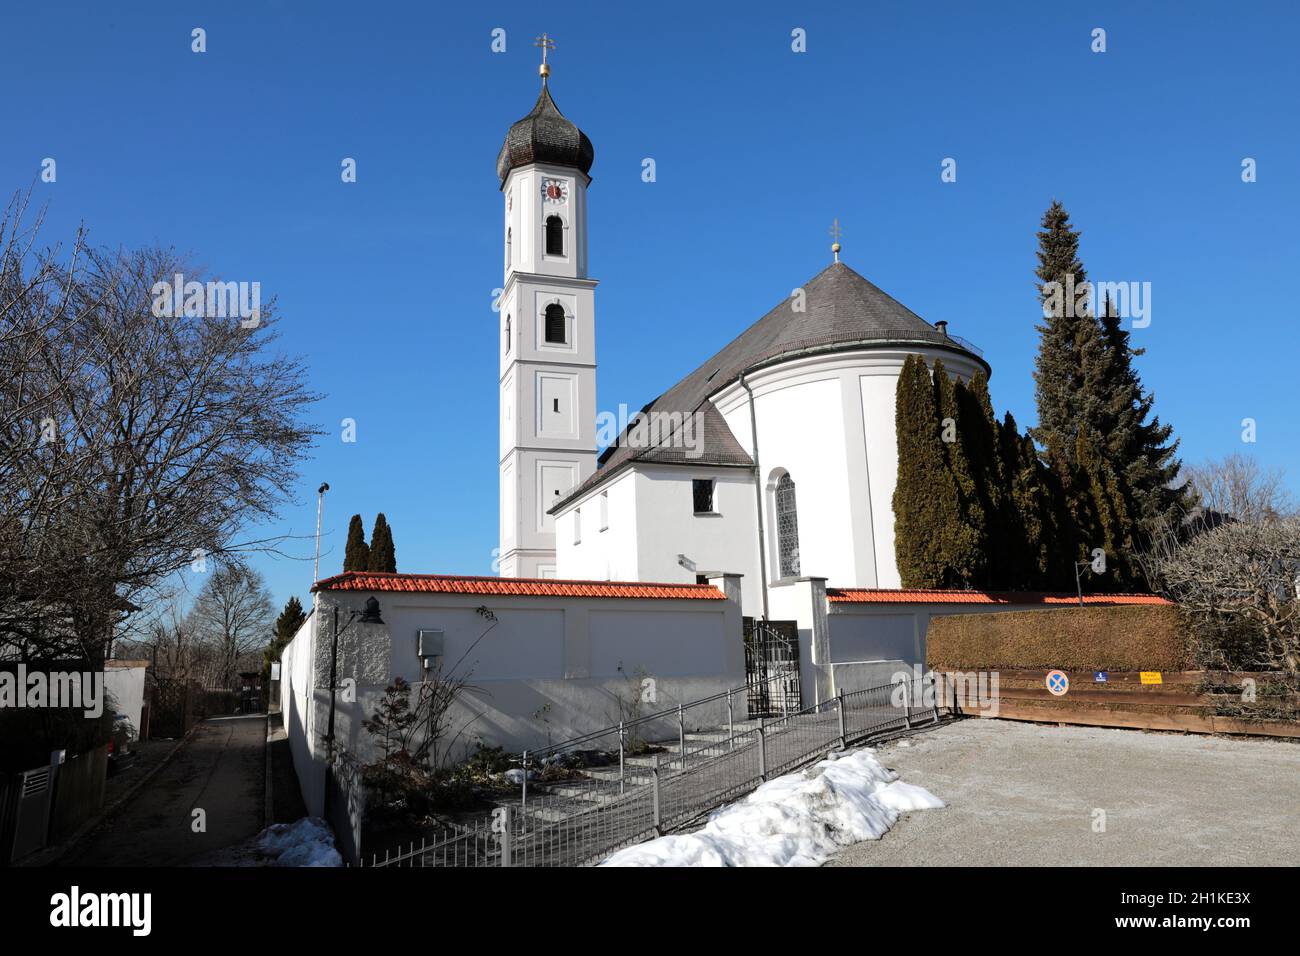 Römisch-katholische Pfarrkirche St. Valentin in Unterföhring bei München aus dem 18. Jahrhundert. Stock Photo